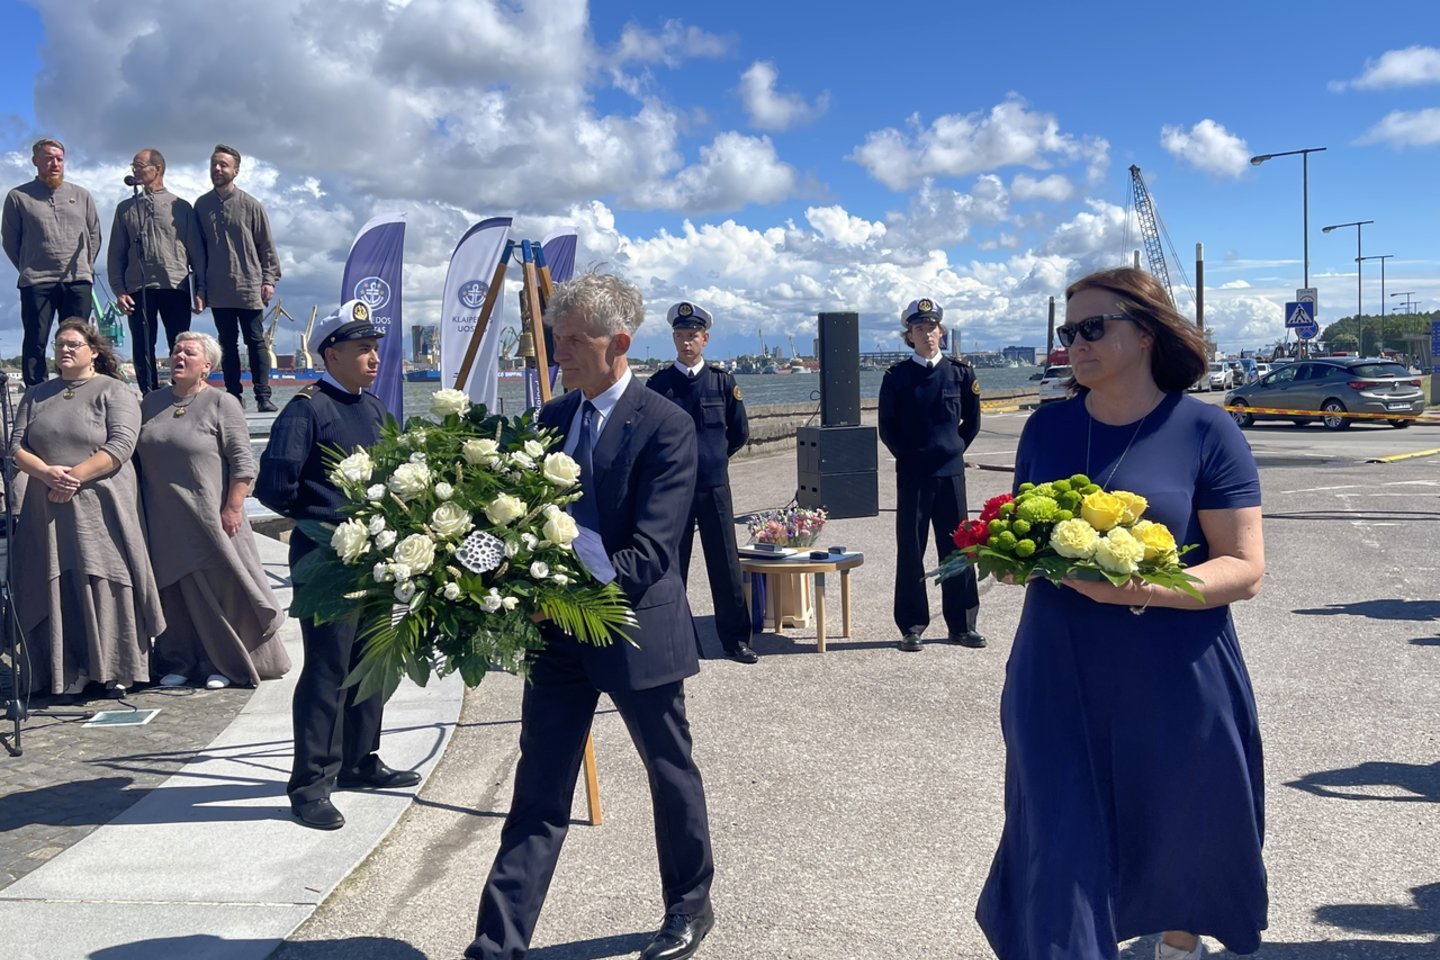 Laivų savininkų laukiamas įstatymų pataisas  inicijuojanti susisiekimo viceministrė L.Maskaliovienė Smiltynėje, prie paminklo "Albatrosas", pagerbė į gimtąjį uostą negrįžusių Lietuvos jūrininkų atminimą. <br> KVJU direkcijos nuotr.